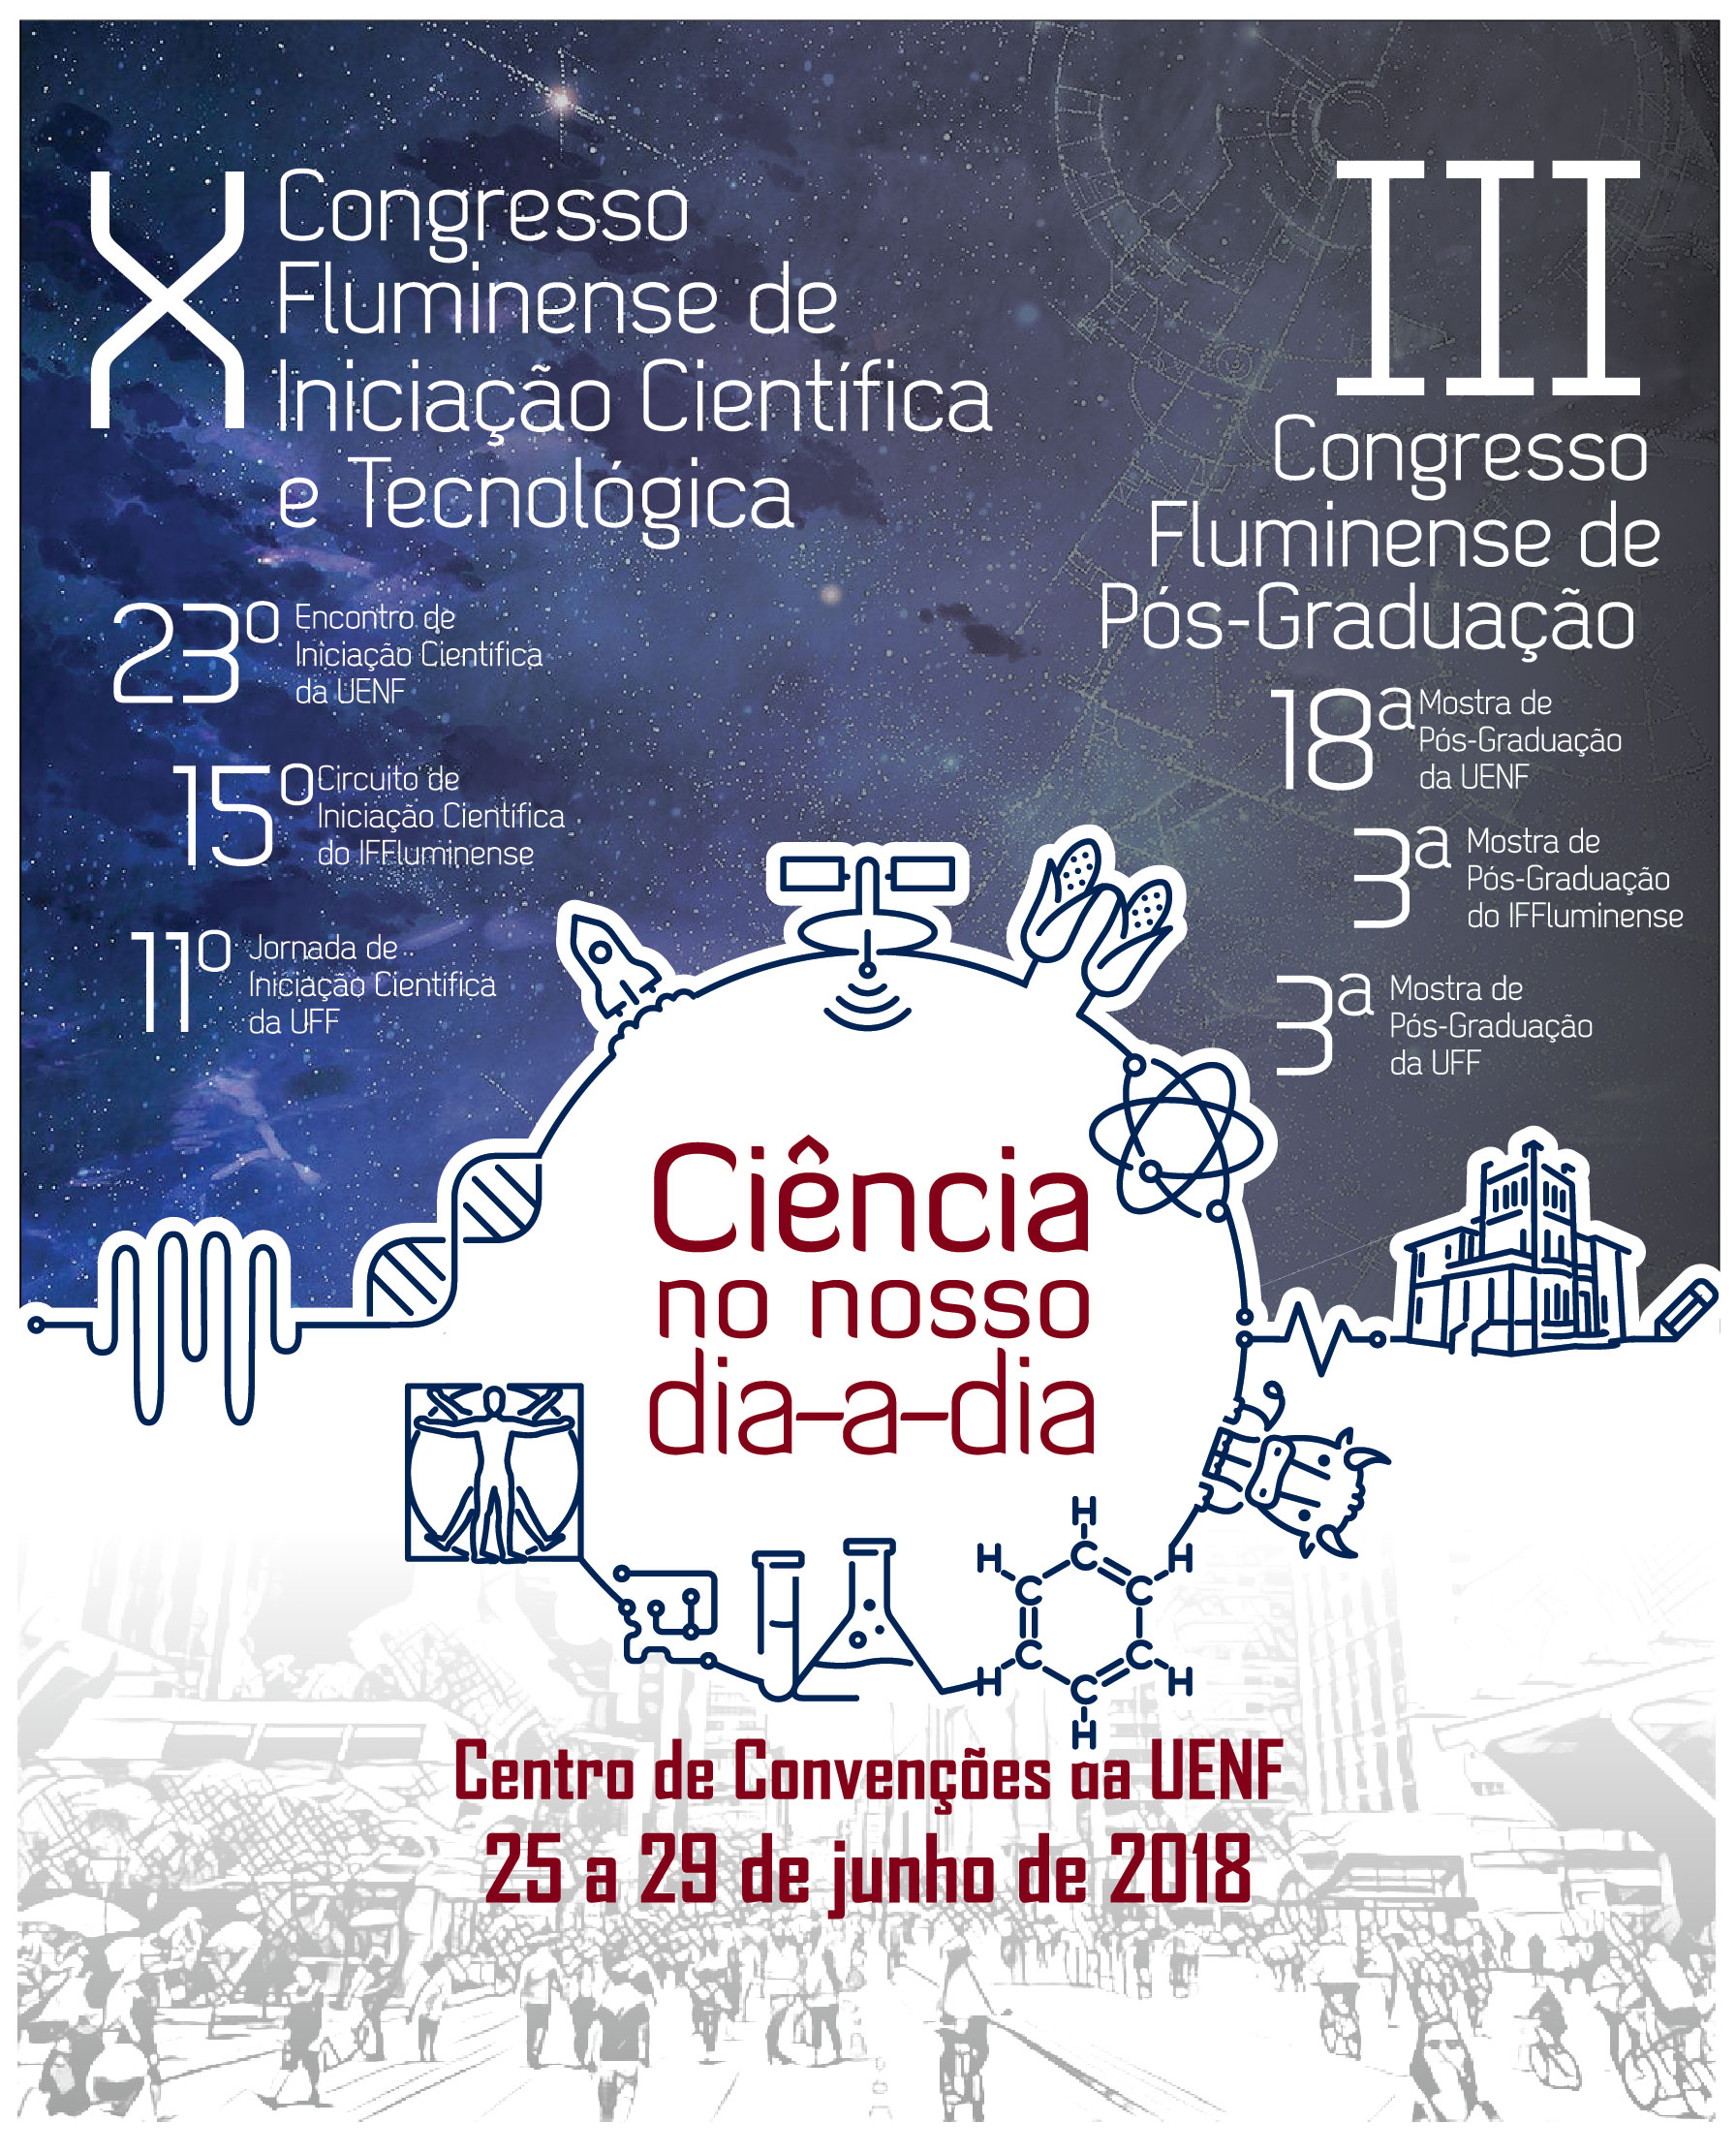 					Visualizar 2018: Congresso Fluminense de Pós-Graduação - CONPG
				